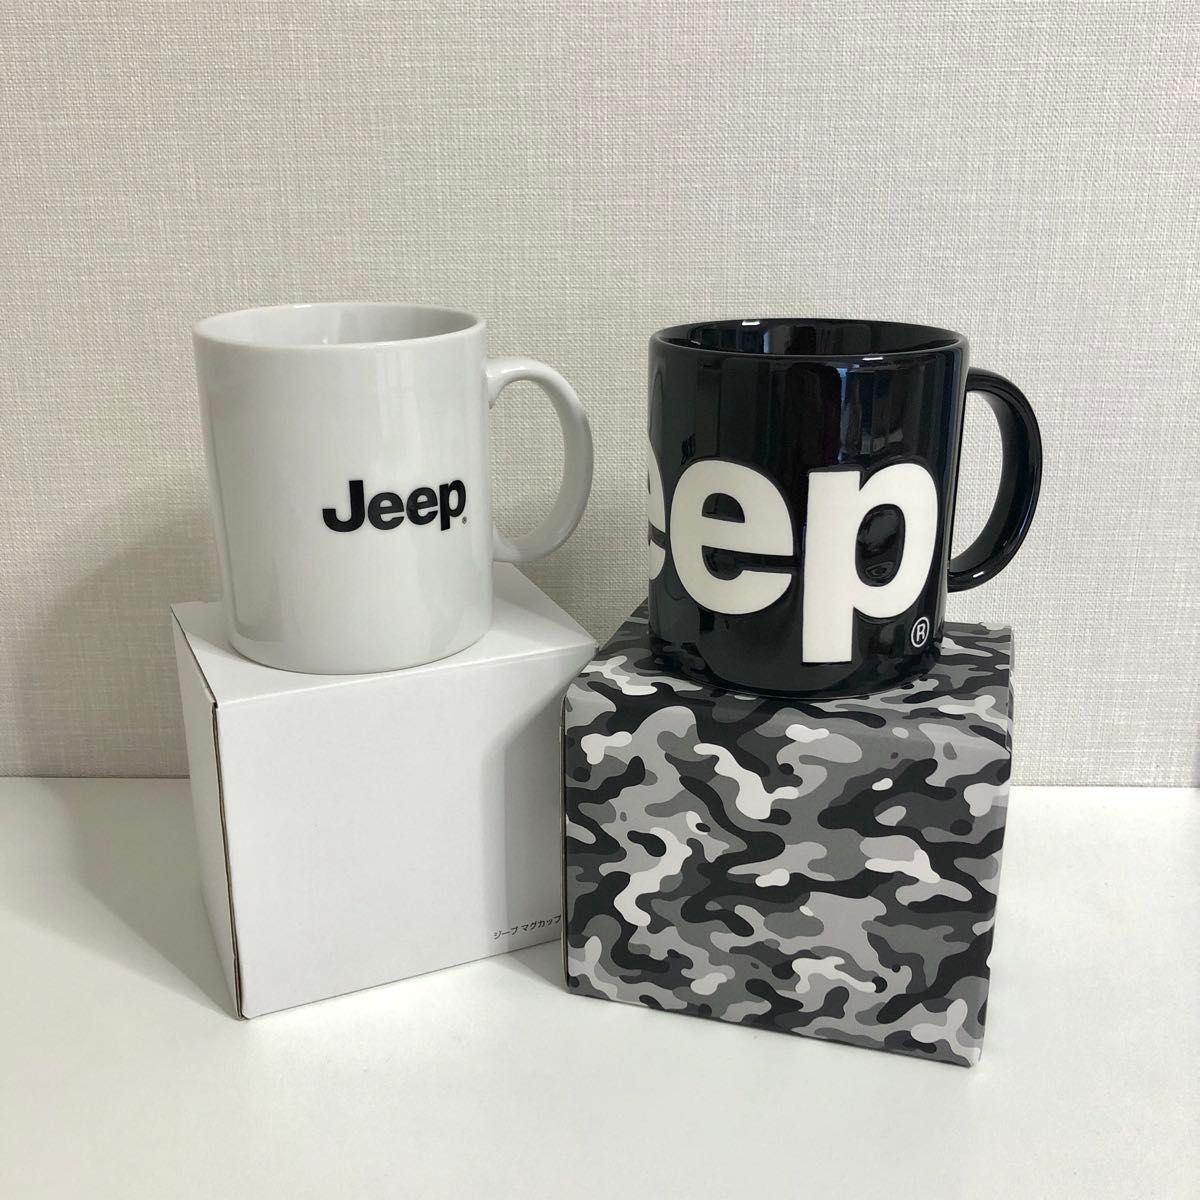 Jeep ジープ オリジナルマグカップ オフィシャルマグカップ陶器 黒 白 ペア 2個セット